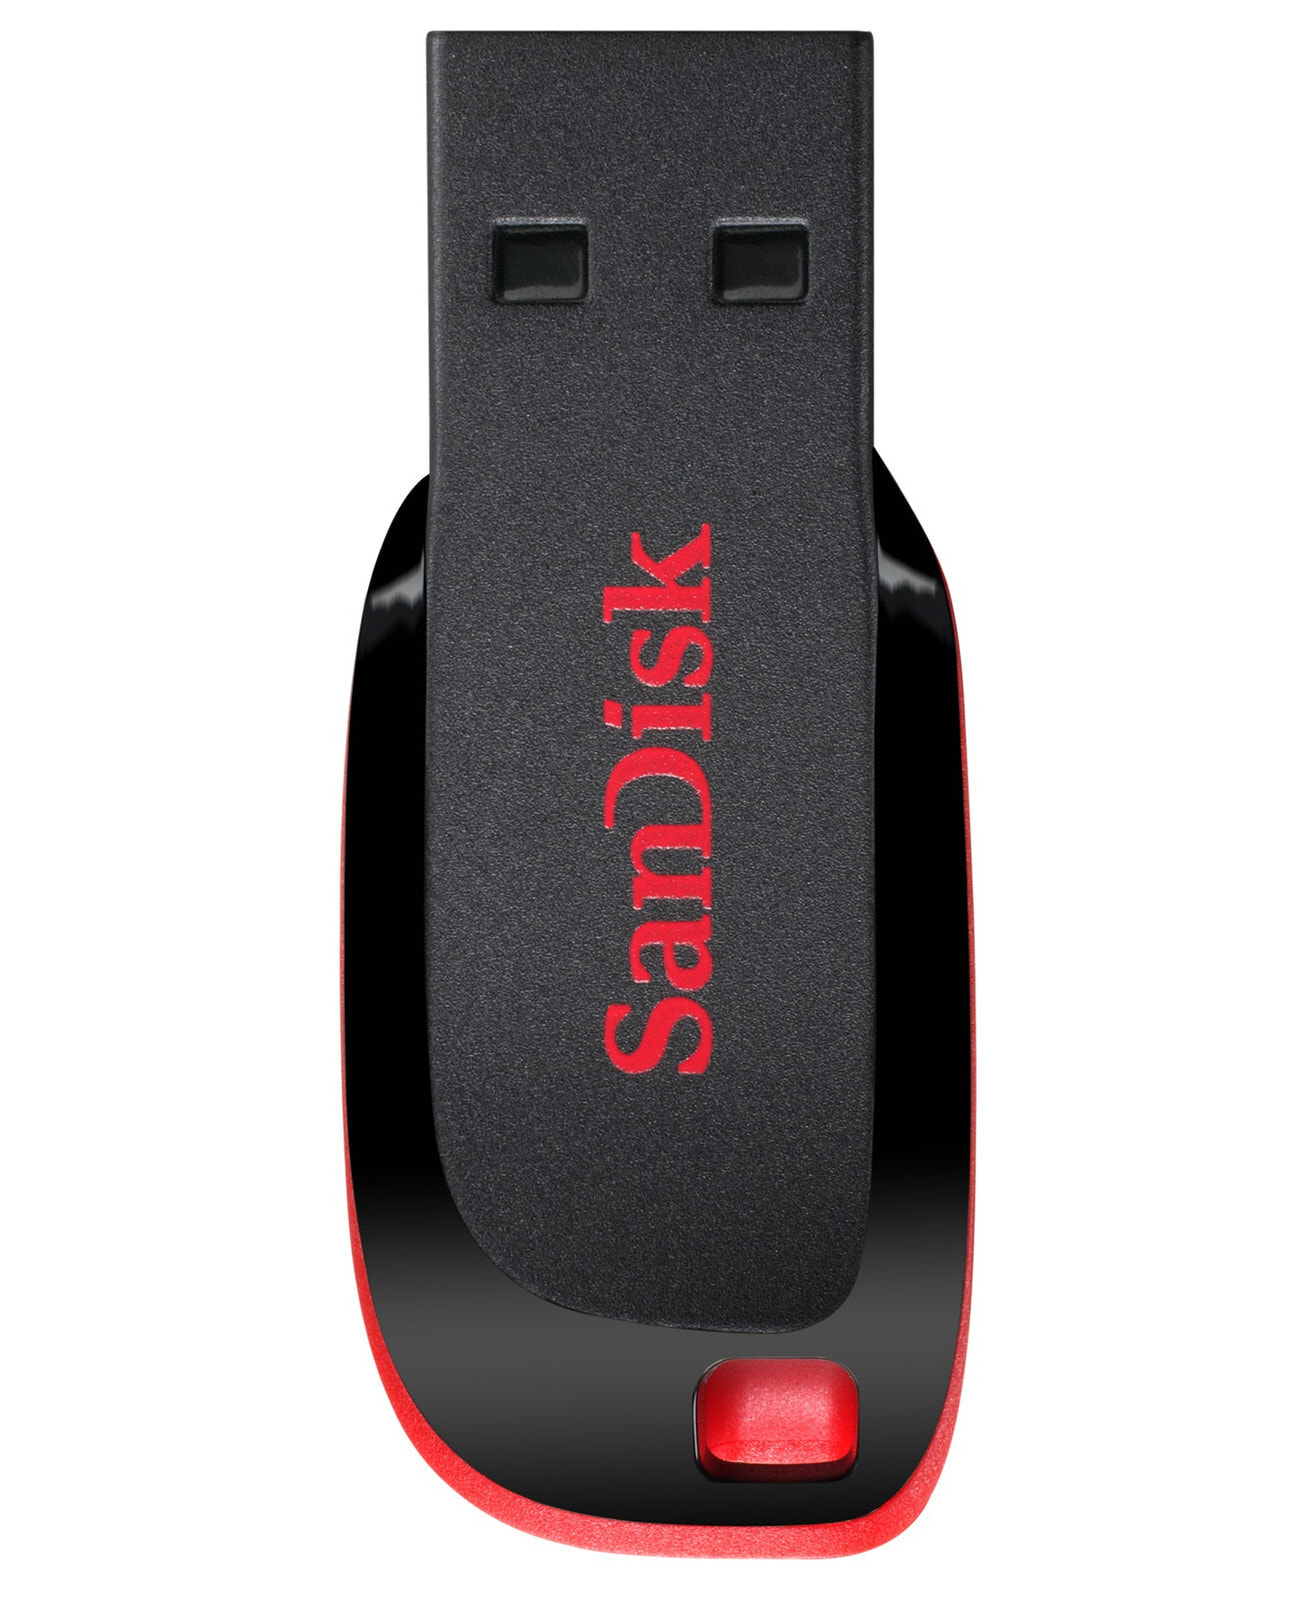 Sandisk Cruzer Blade USB флеш накопитель 64 GB USB тип-A 2.0 Черный, Красный SDCZ50-064G-B35